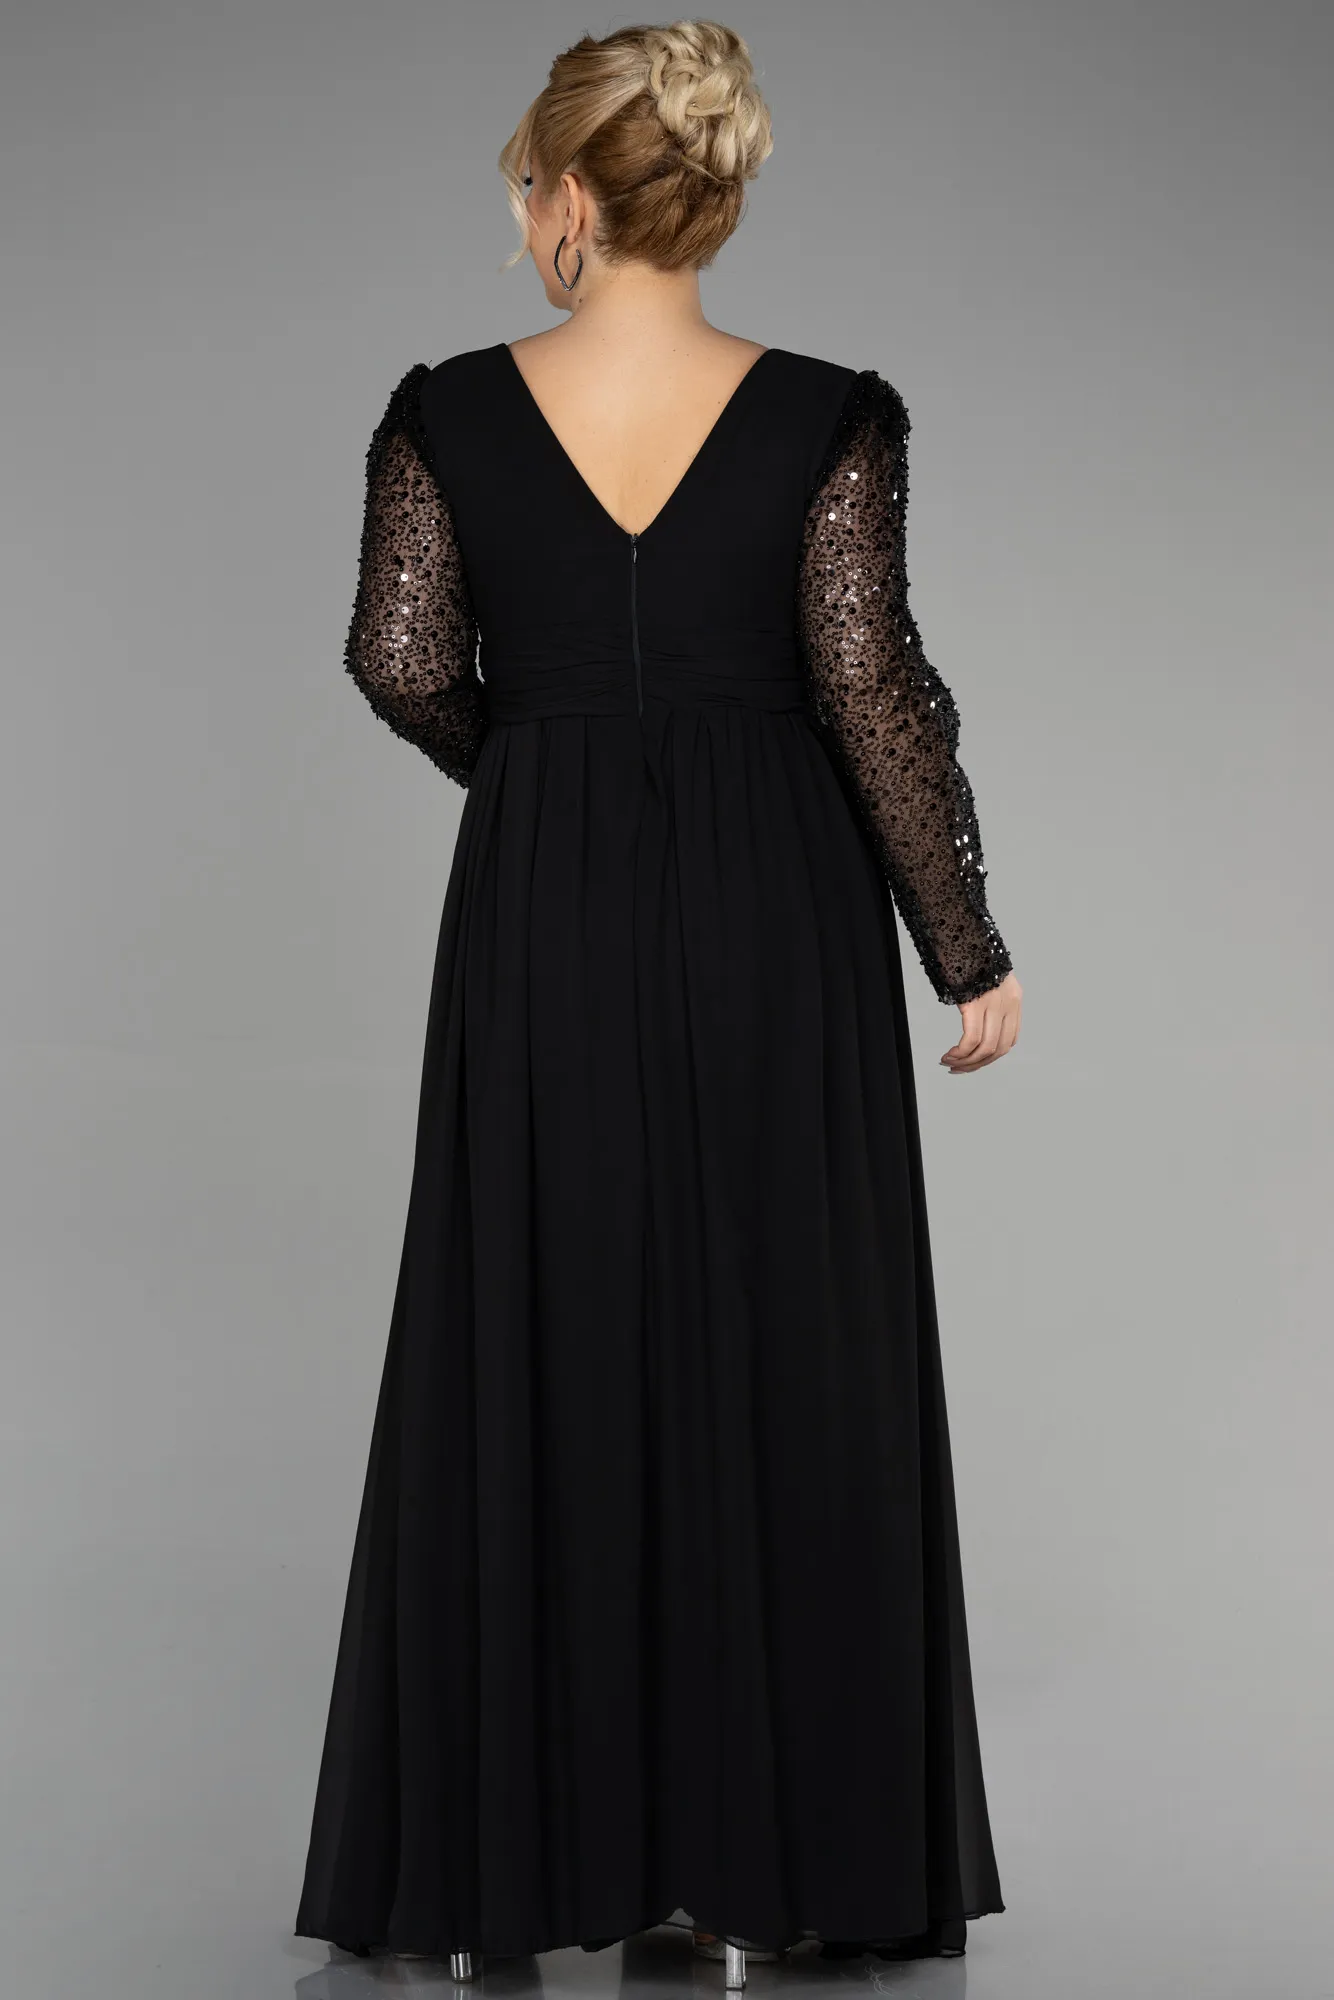 Black-Long Chiffon Plus Size Evening Dress ABU3264